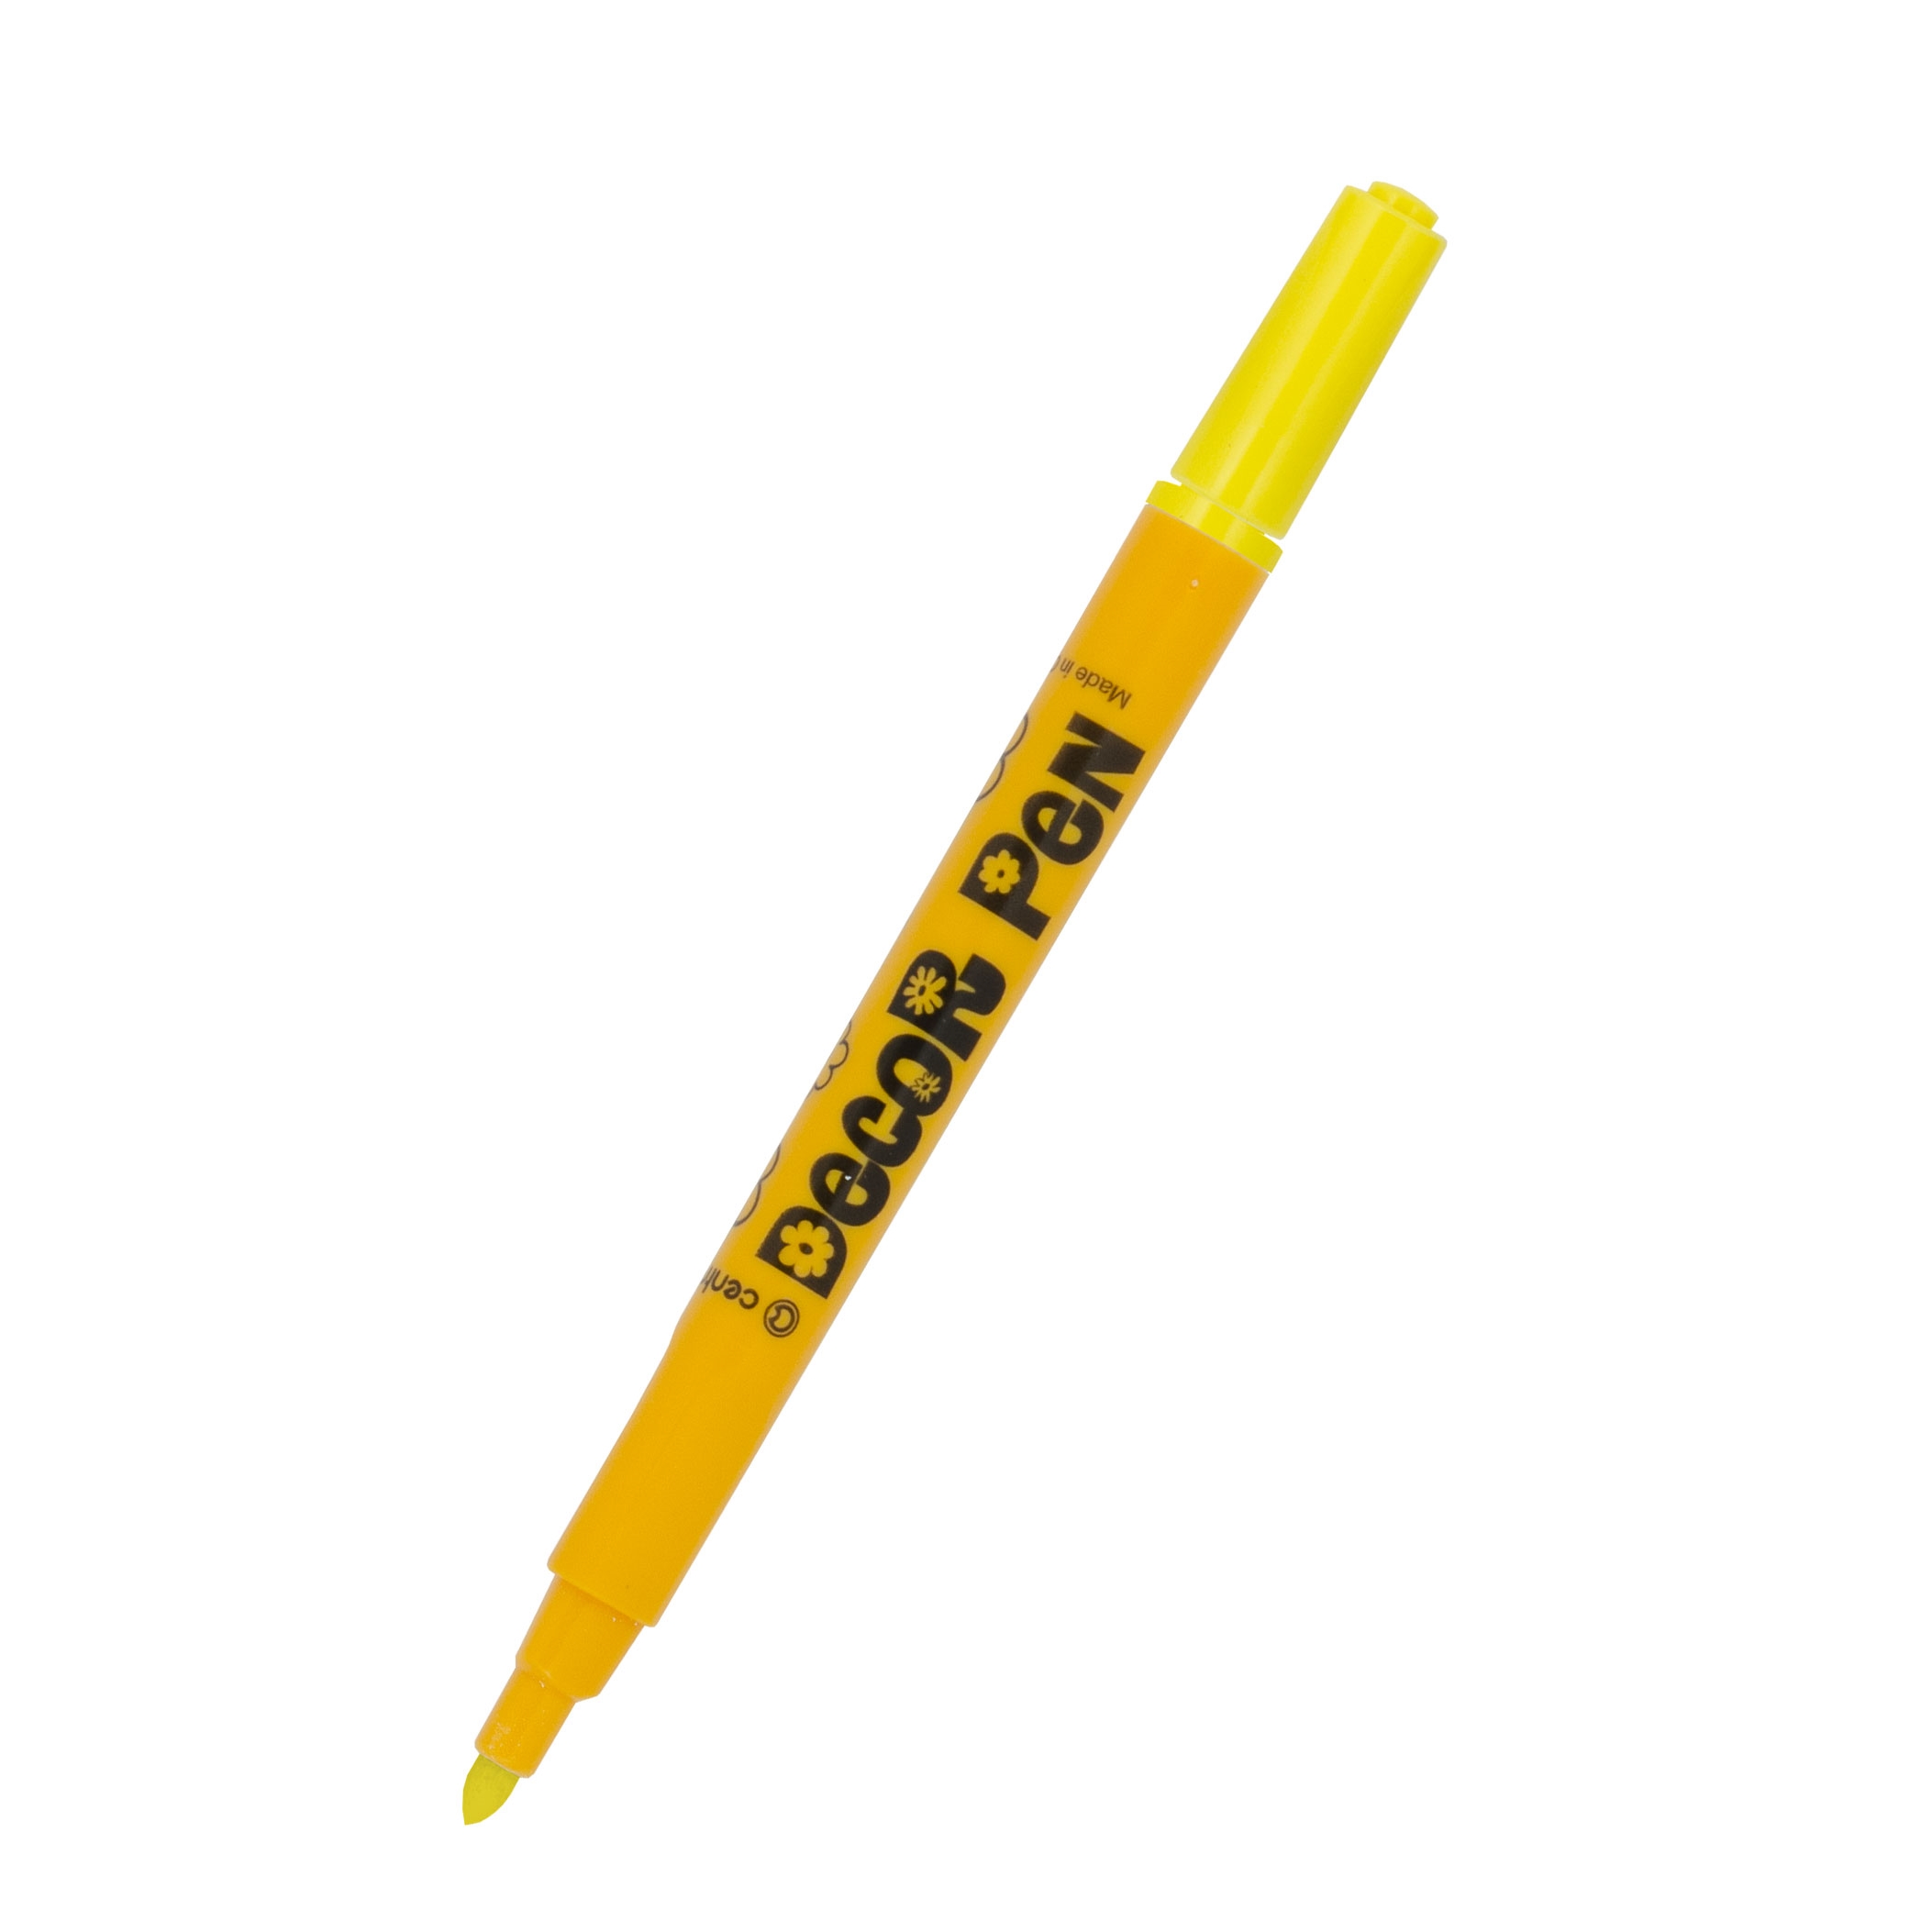 Značkovač Centropen 2738 Decor Pen, žlutý